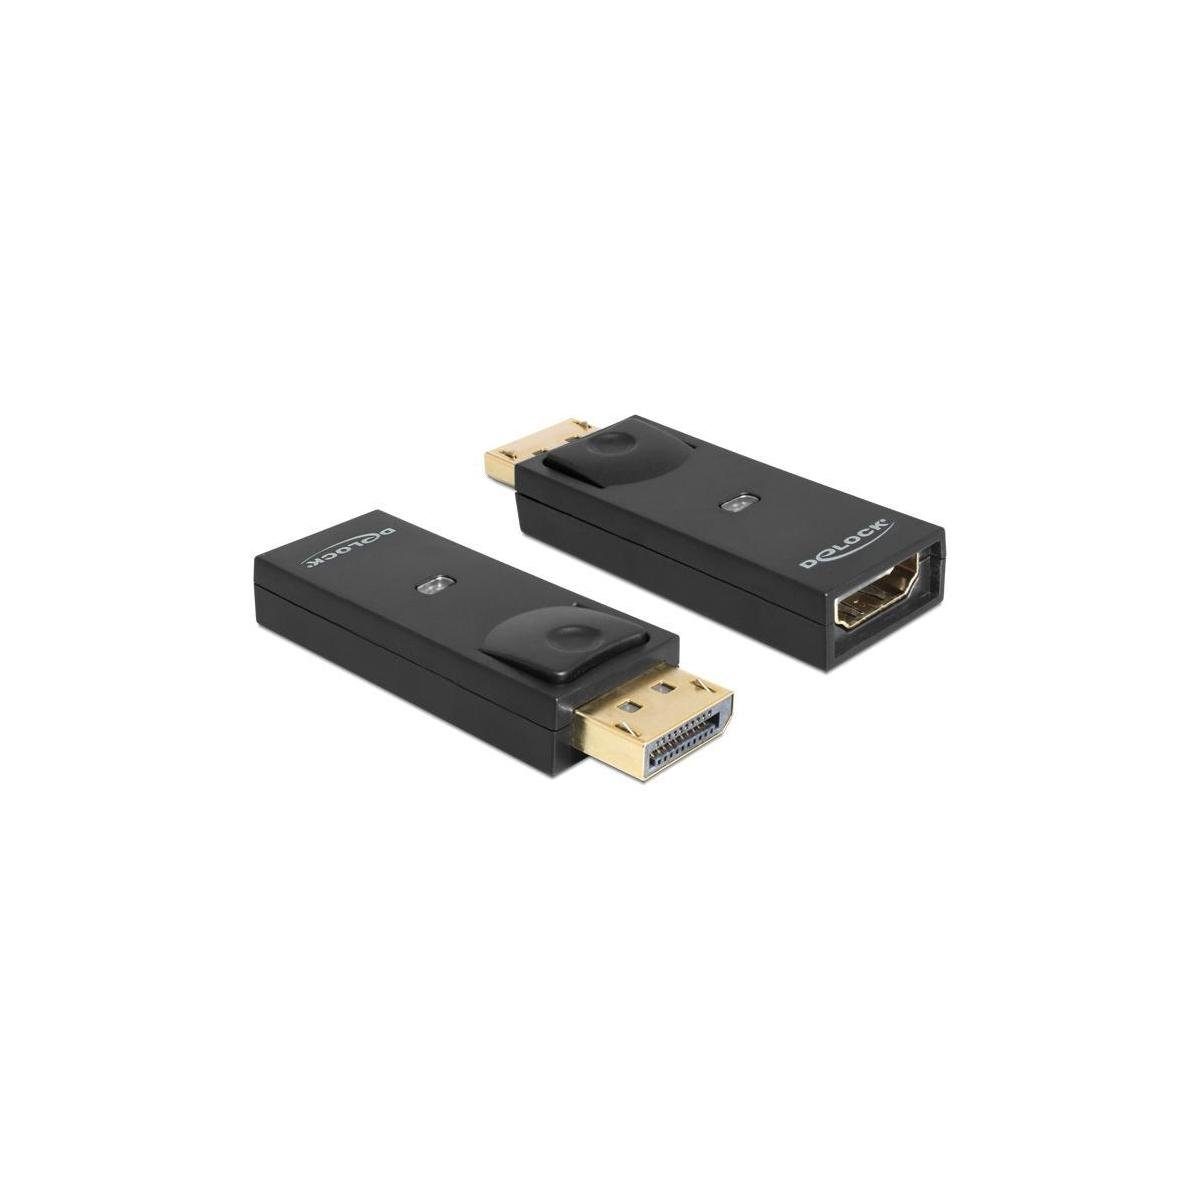 Delock Adapter DisplayPort 1.1 Stecker > HDMI Buchse Passiv, schwarz Computer-Kabel, Display Port, HDMI